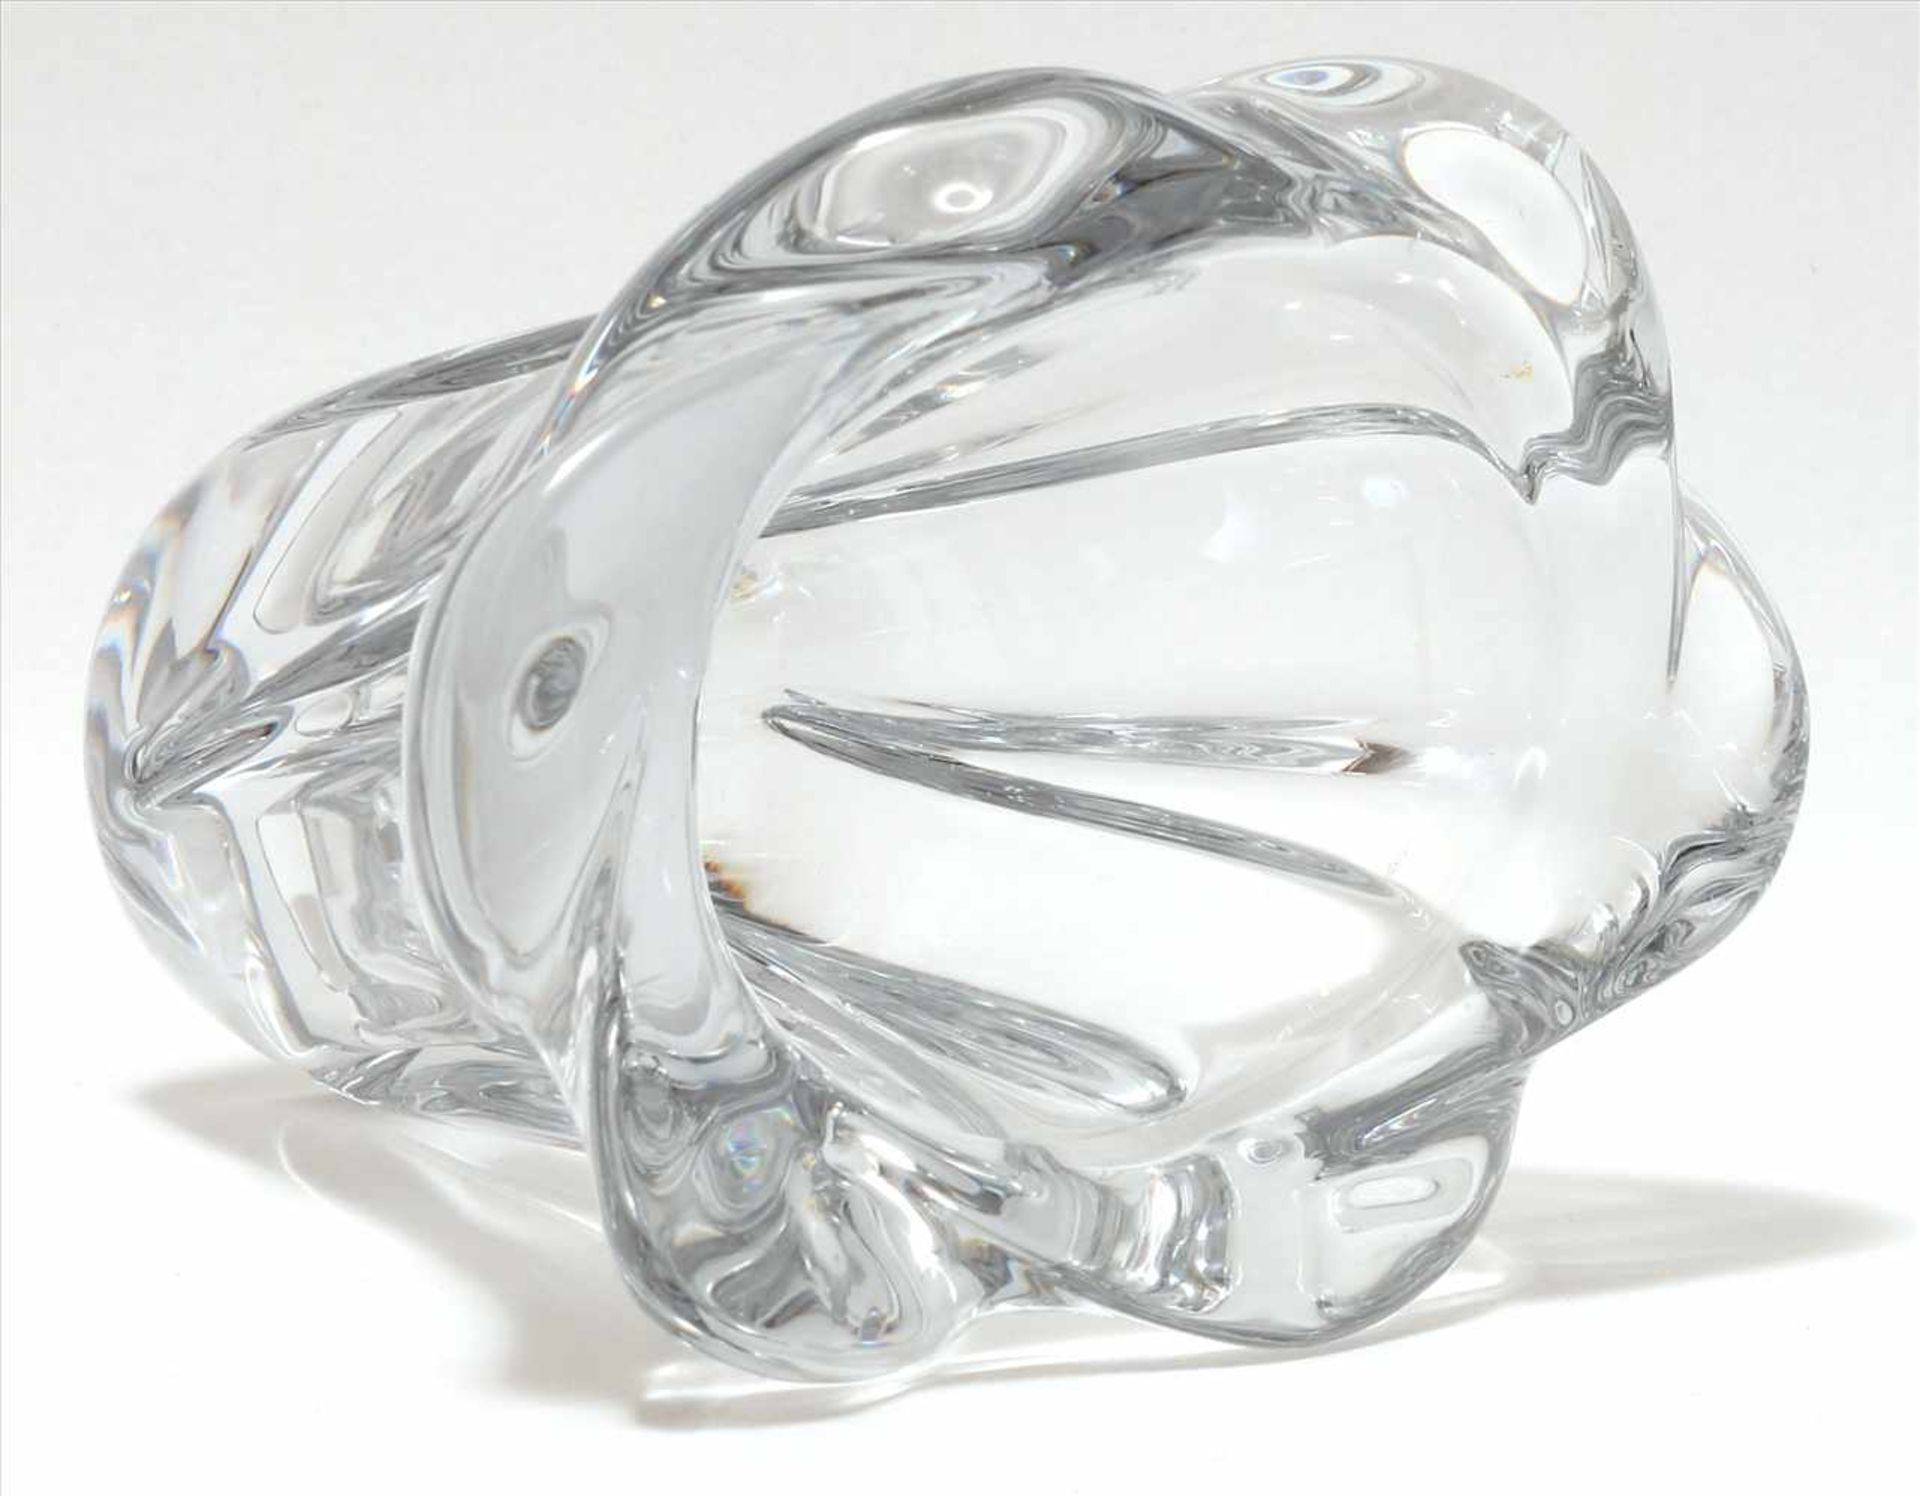 GlasvaseDaum France. Blütenform. Klarglas. Seitlich Ätzsignatur. Durchmesser ca. 15 x 12,5 cm, - Bild 3 aus 4